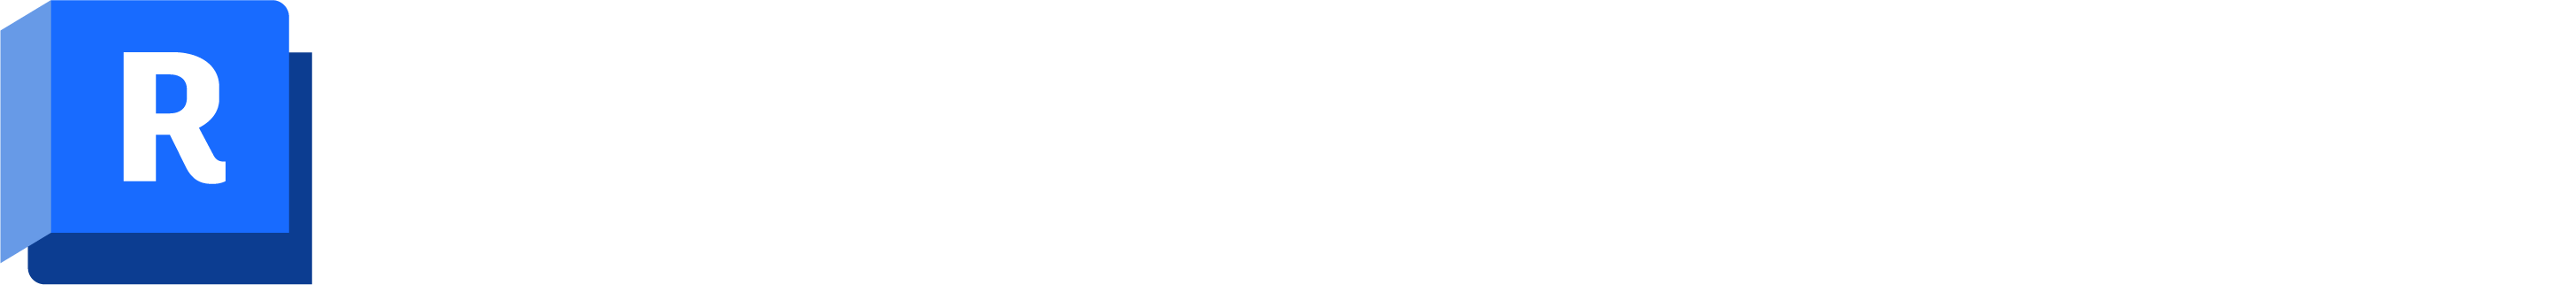 Autocad Revit Lt Suite Icon 400Px Social